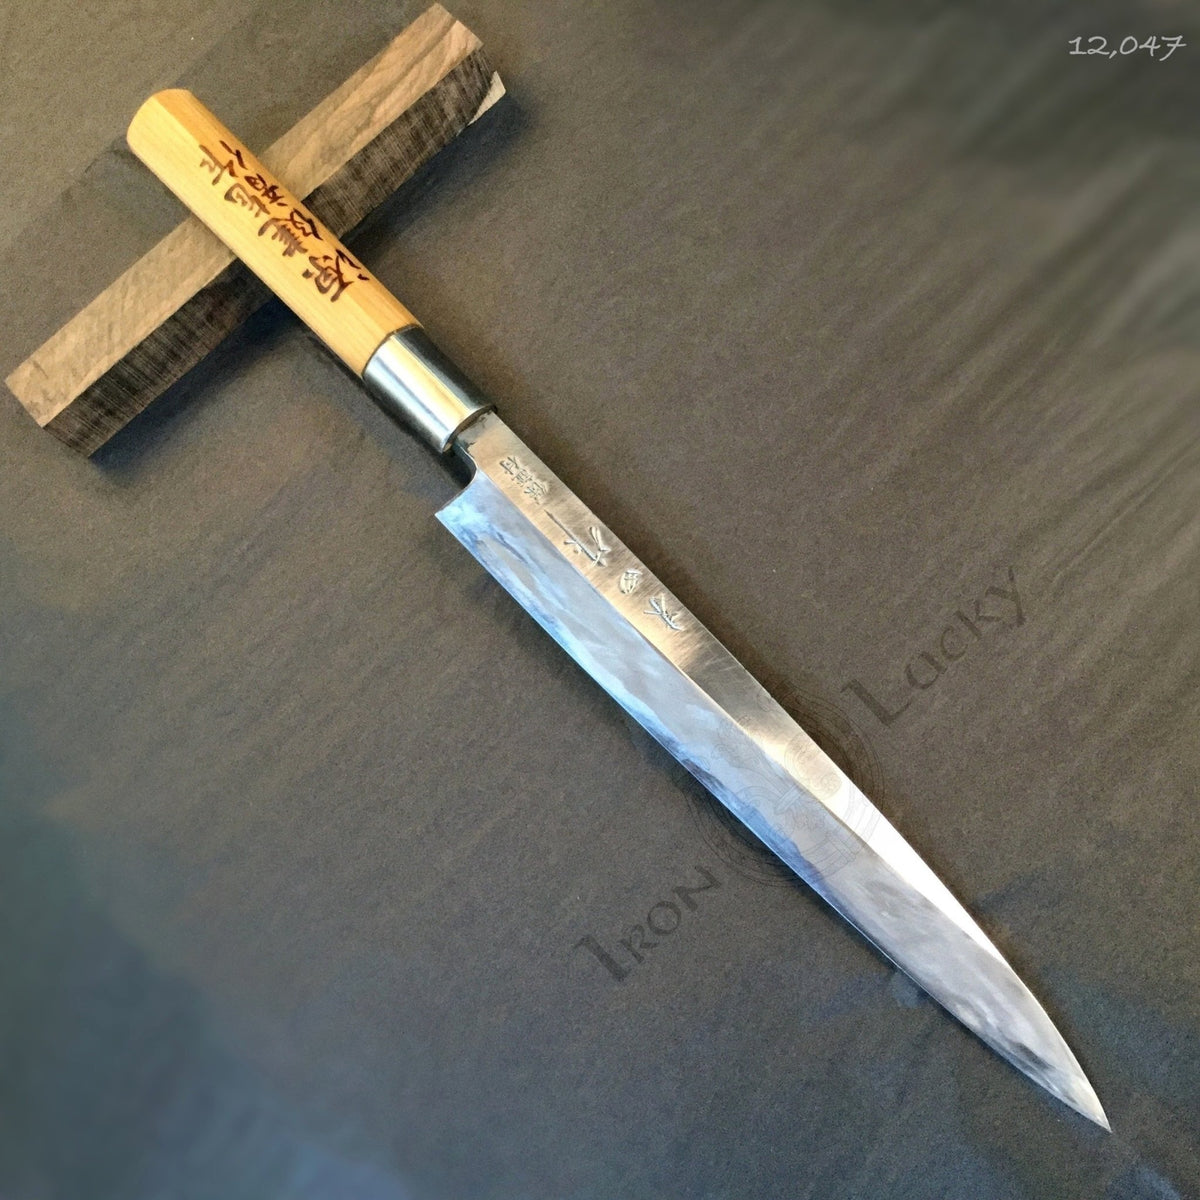 Old JAPAN kitchen knife